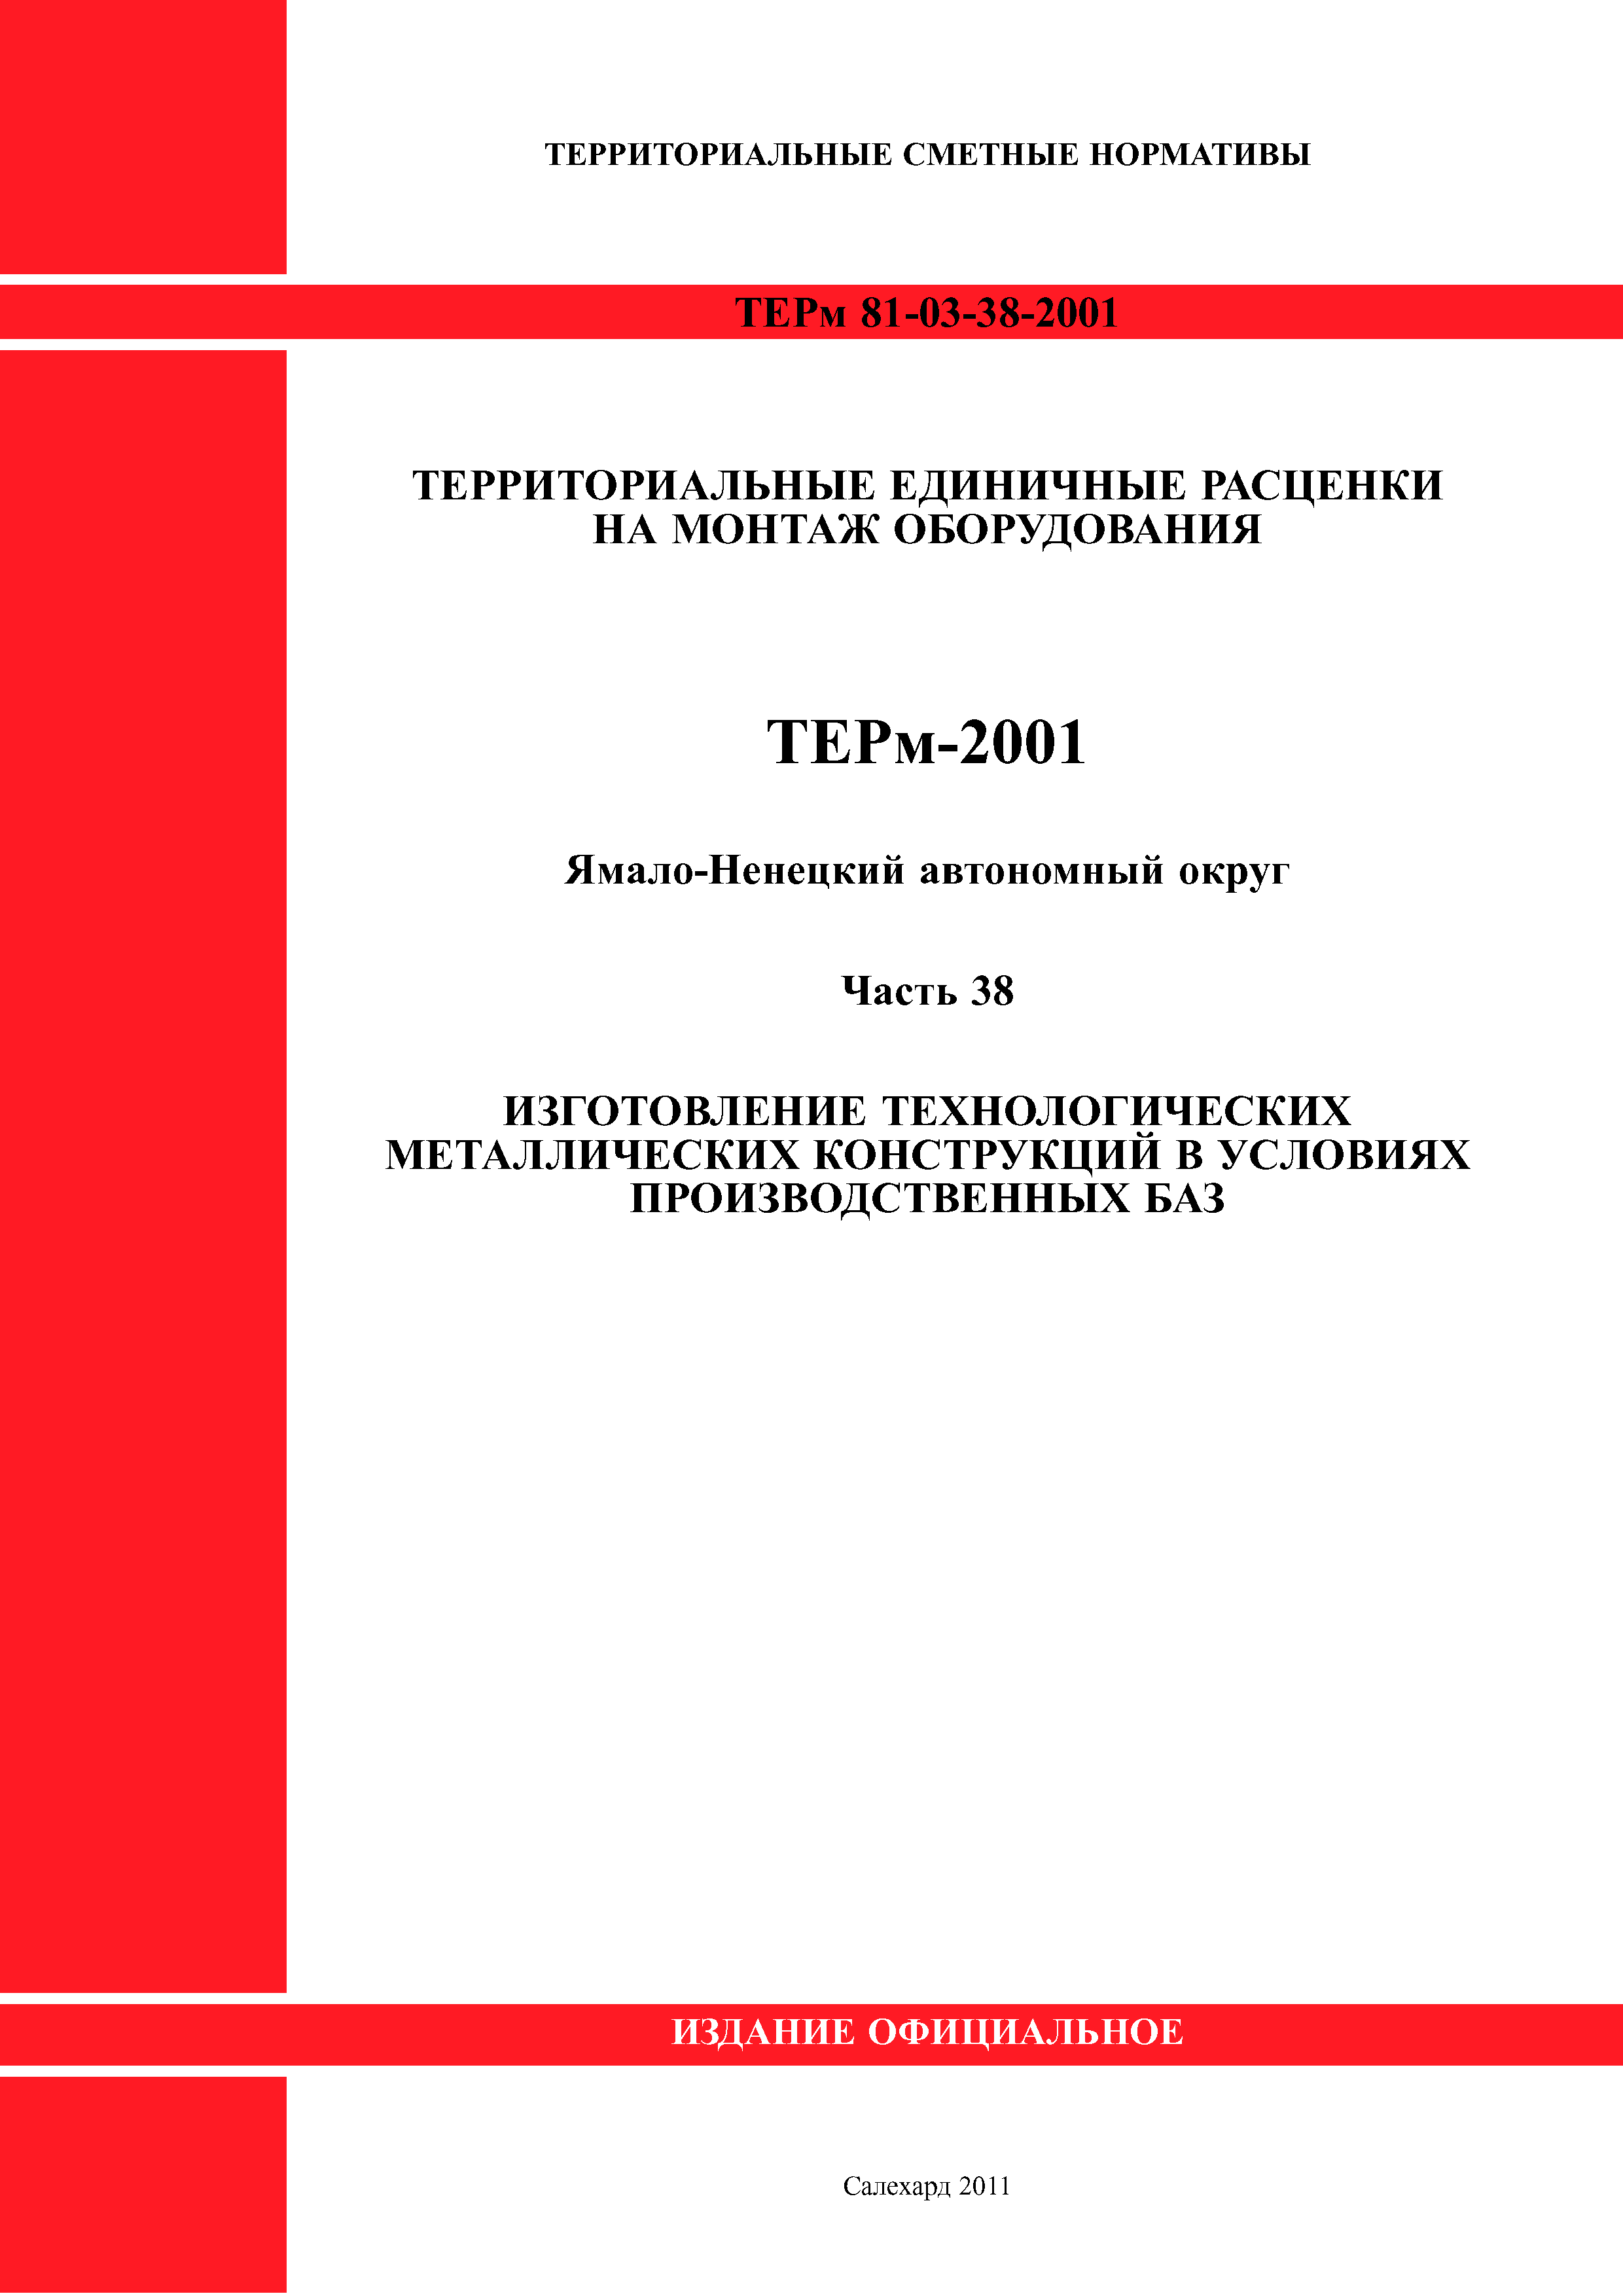 ТЕРм Ямало-Ненецкий автономный округ 38-2001